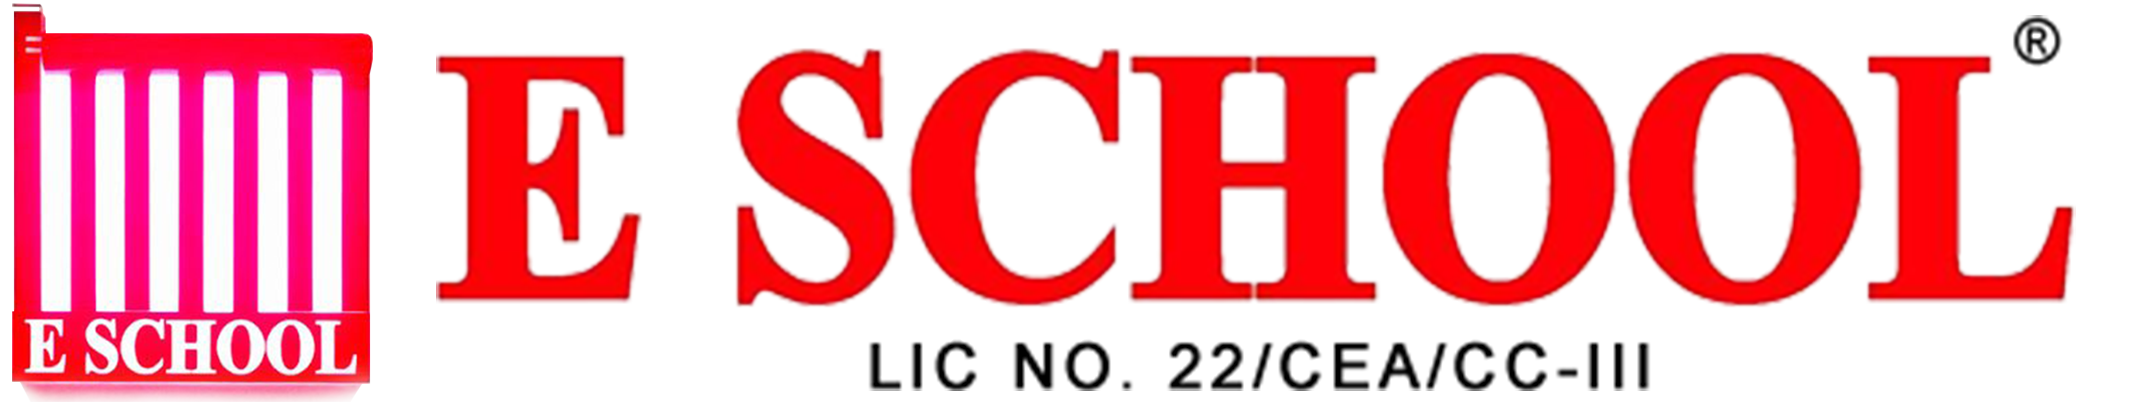 E School Logo